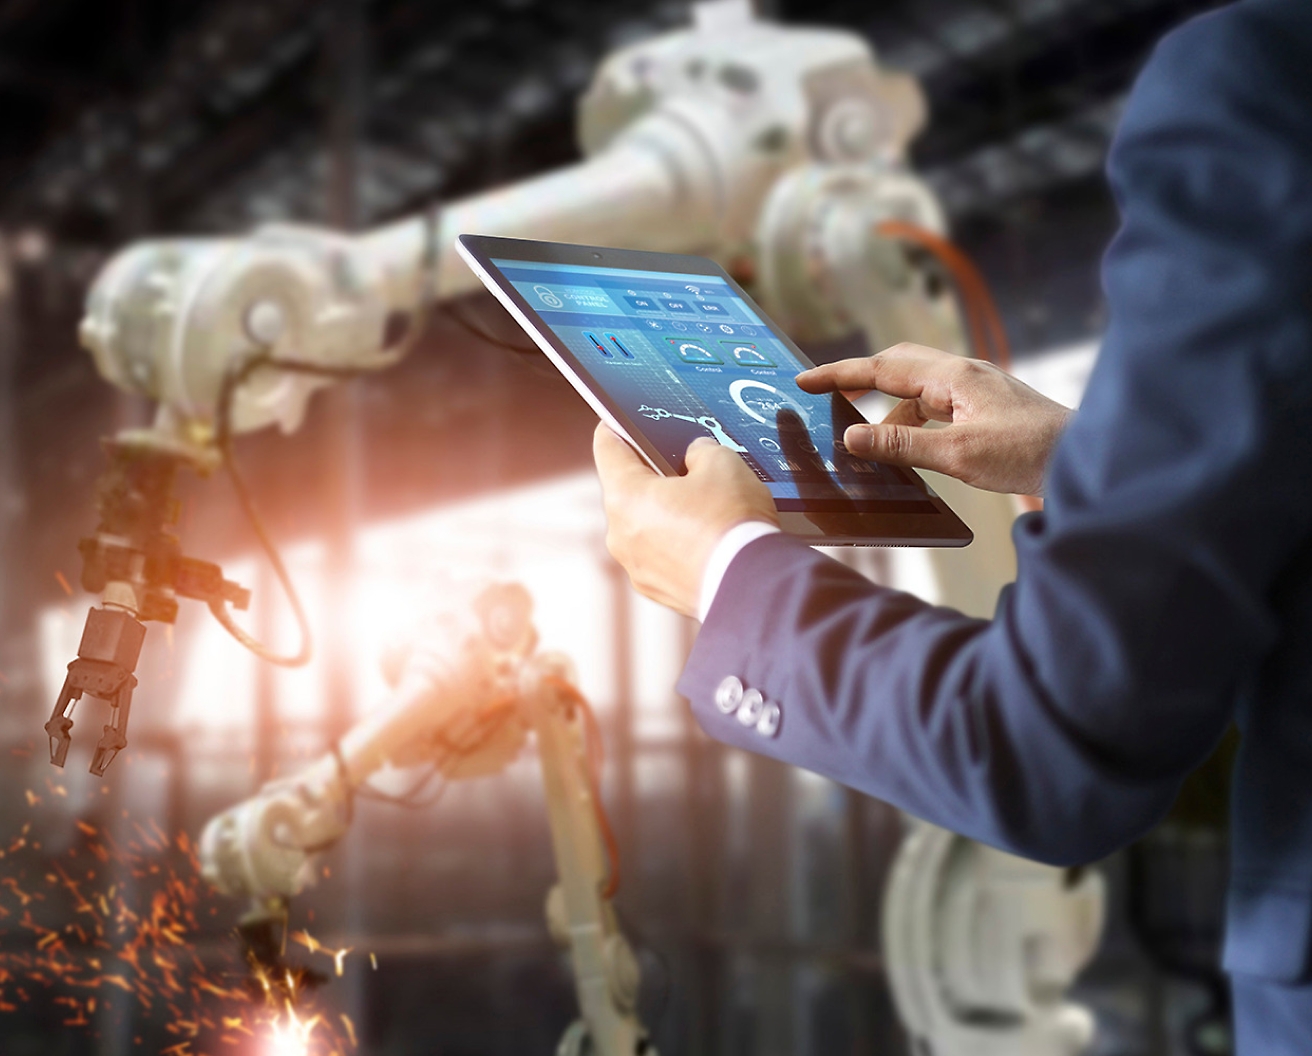 Osoba v továrně ovládá robotická ramena pomocí tabletu, což poukazuje na pokročilou automatizační technologii